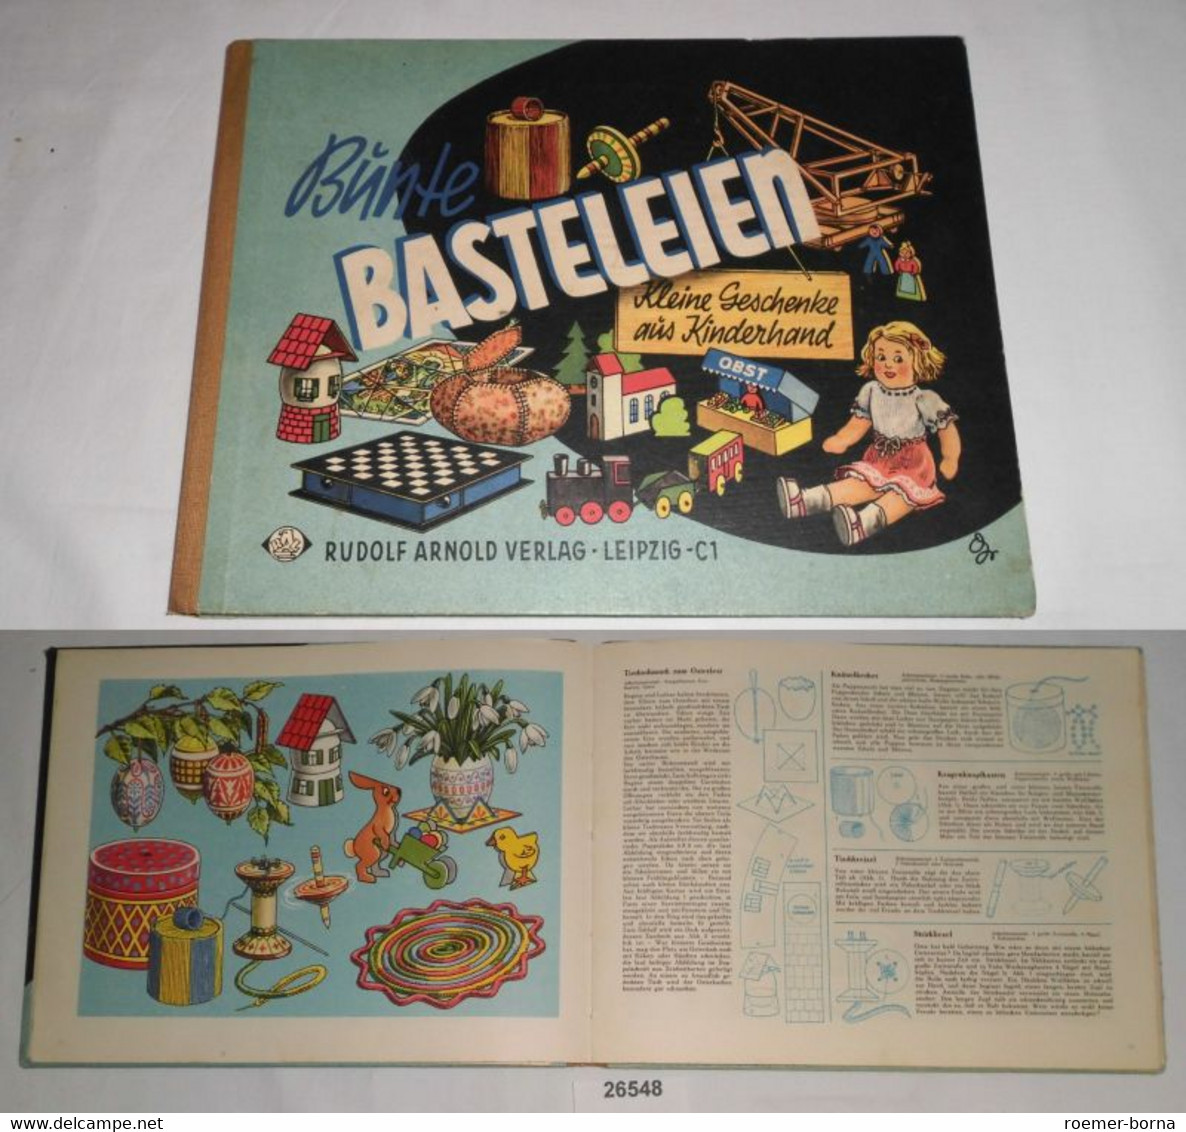 Bunte Basteleien - Kleine Geschenke Aus Kinderhand - School Books